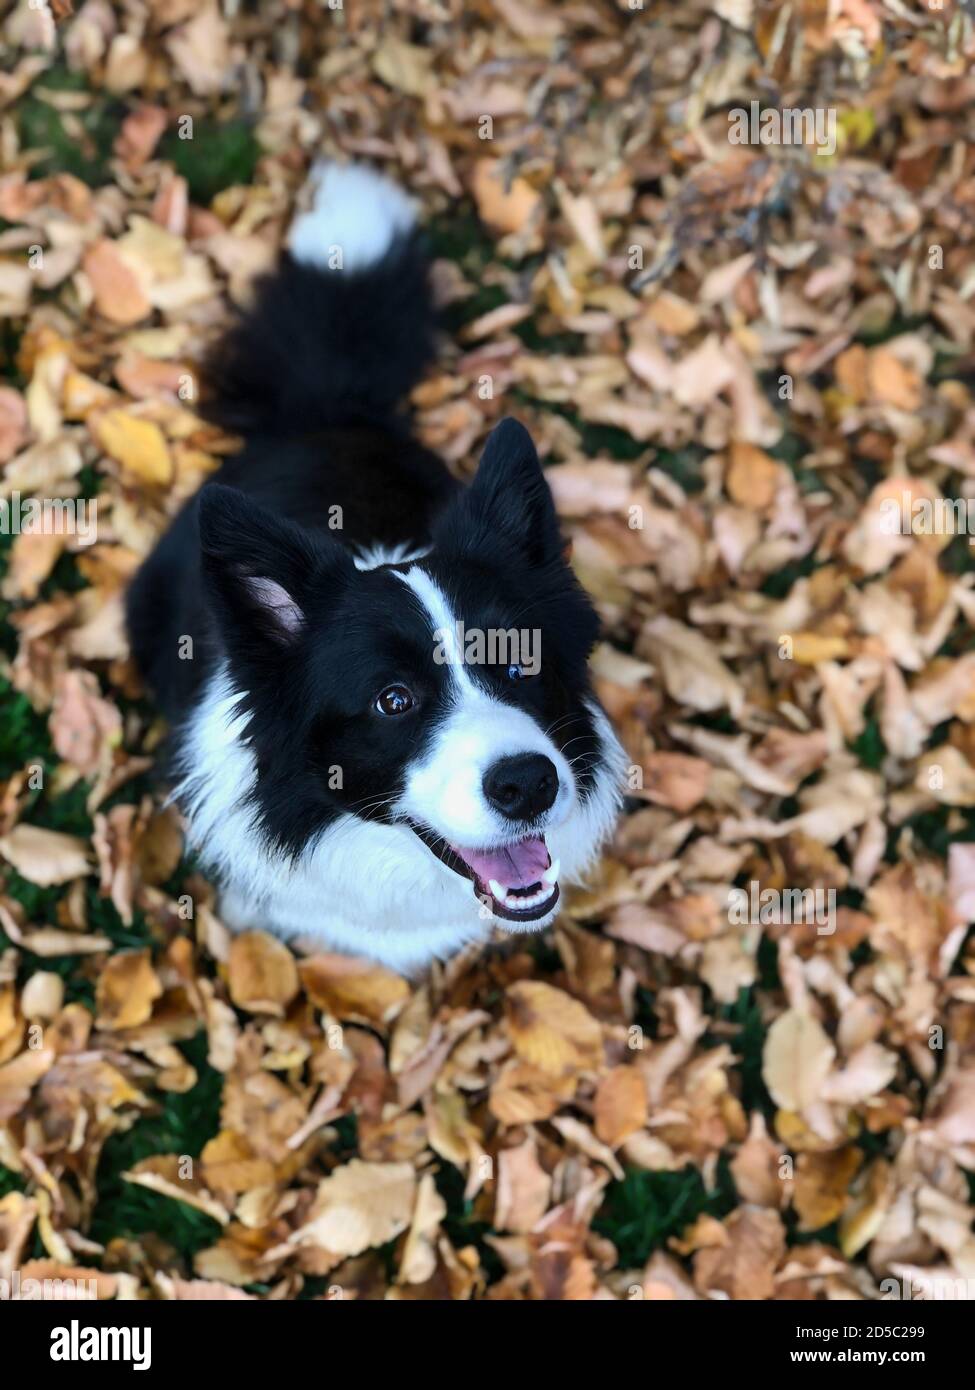 Draufsicht auf lächelnde Border Collie Sitting Down on Fallen Autumn Leaves. Top-Down-Bild von Schwarz und Weiß Happy Dog in der Herbstsaison. Stockfoto